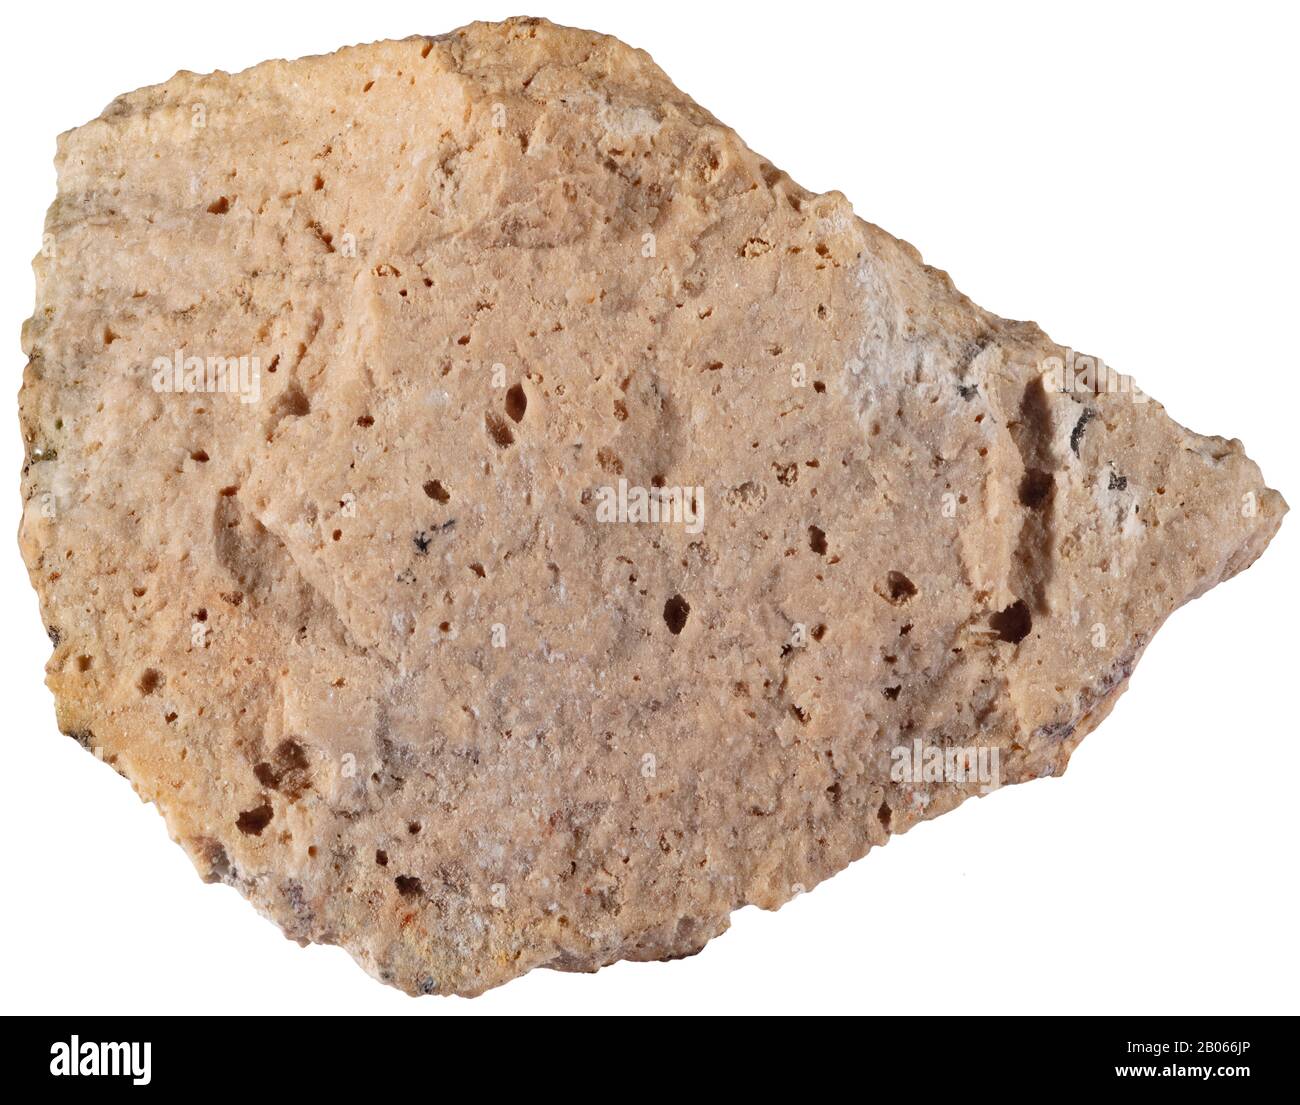 Argile, Ottawa, les minéraux argileux sont des minéraux d'altération courants ; phyllosilicates d'aluminium hydratés Banque D'Images